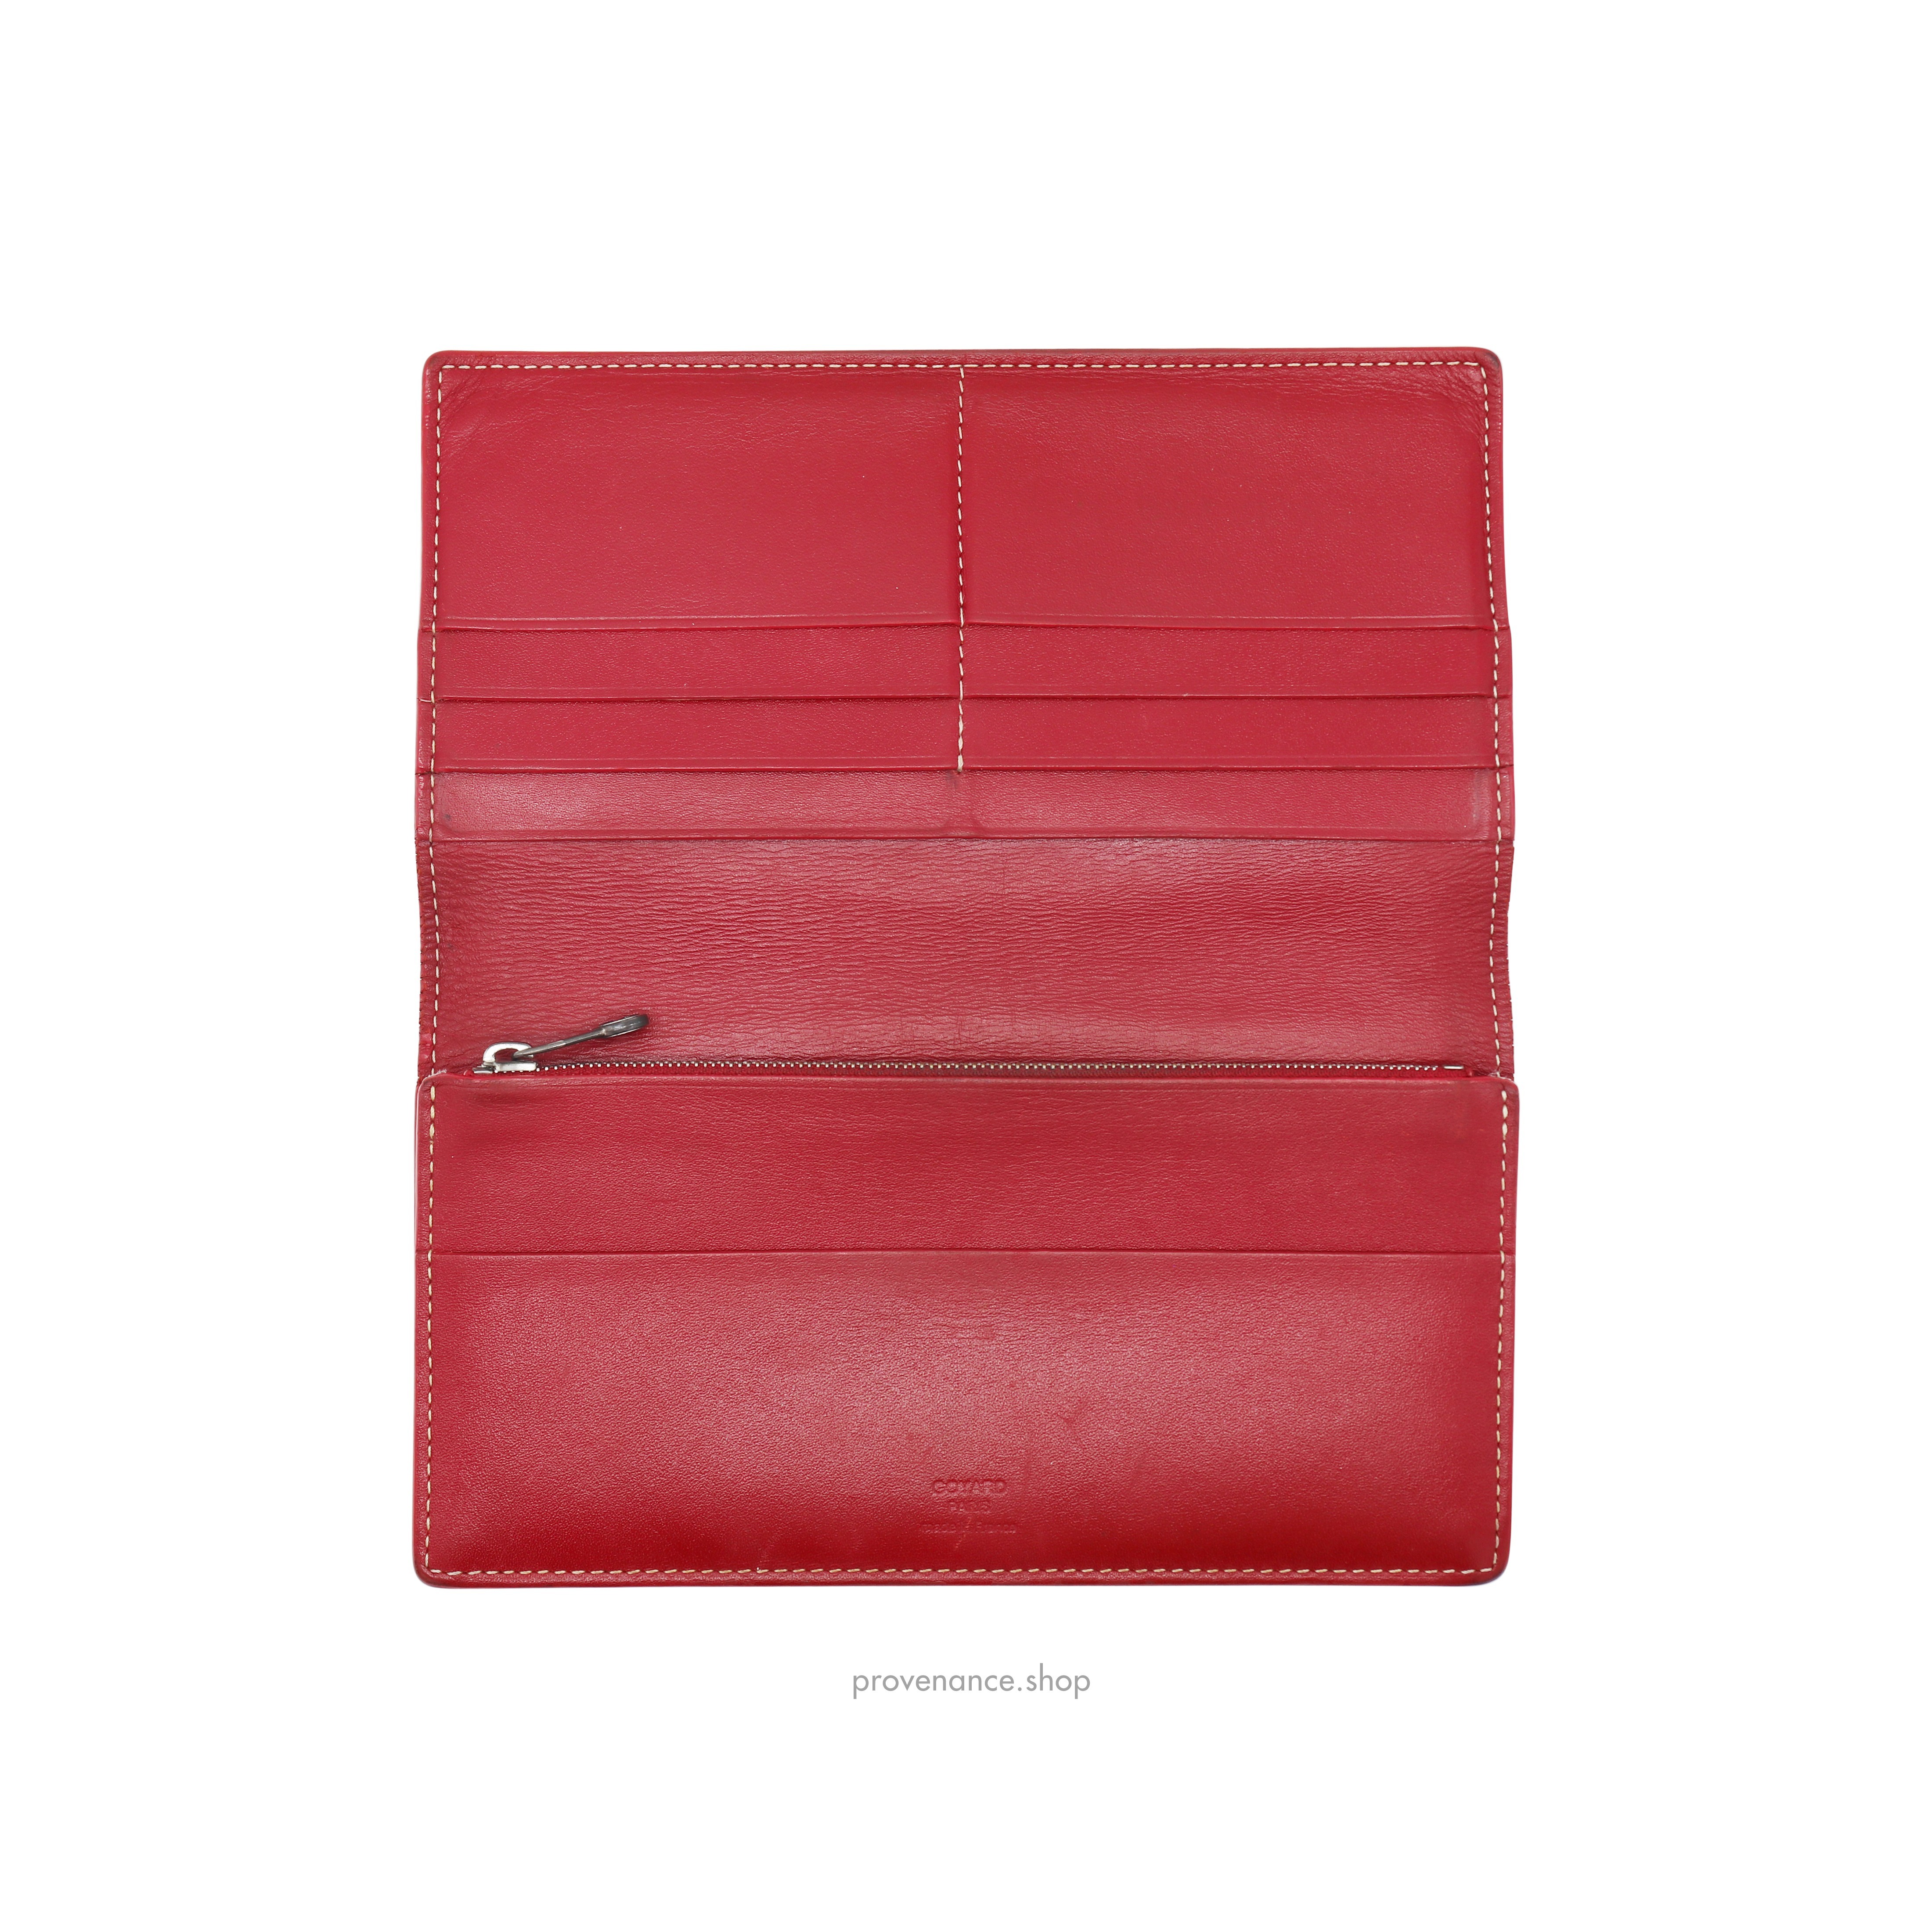 Richelieu Long Wallet - Red Goyardine - 6